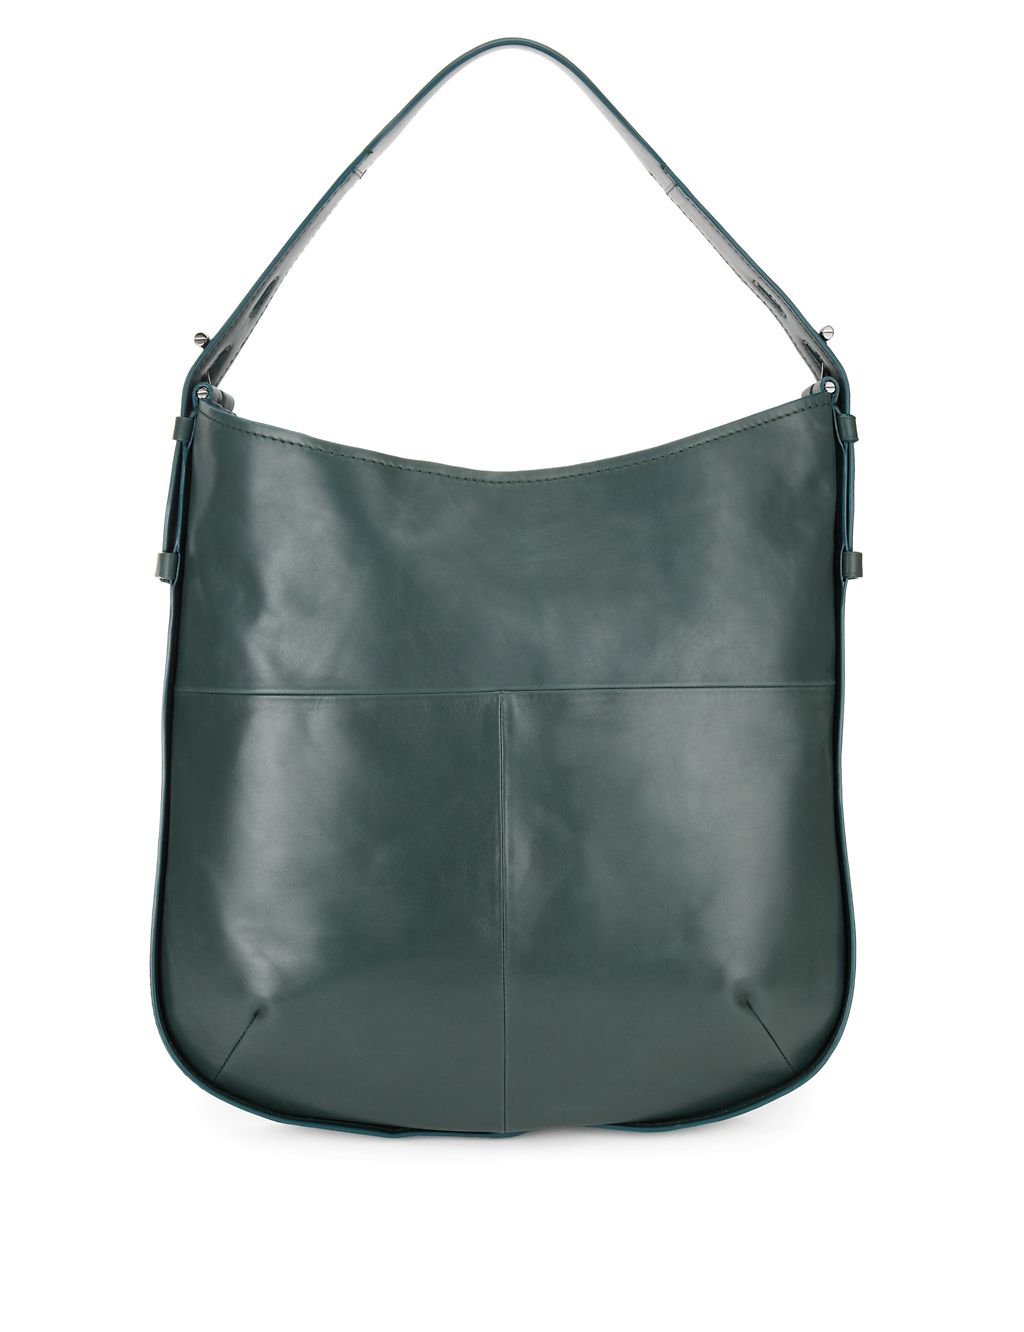 Leather Hobo Bag 2 of 2